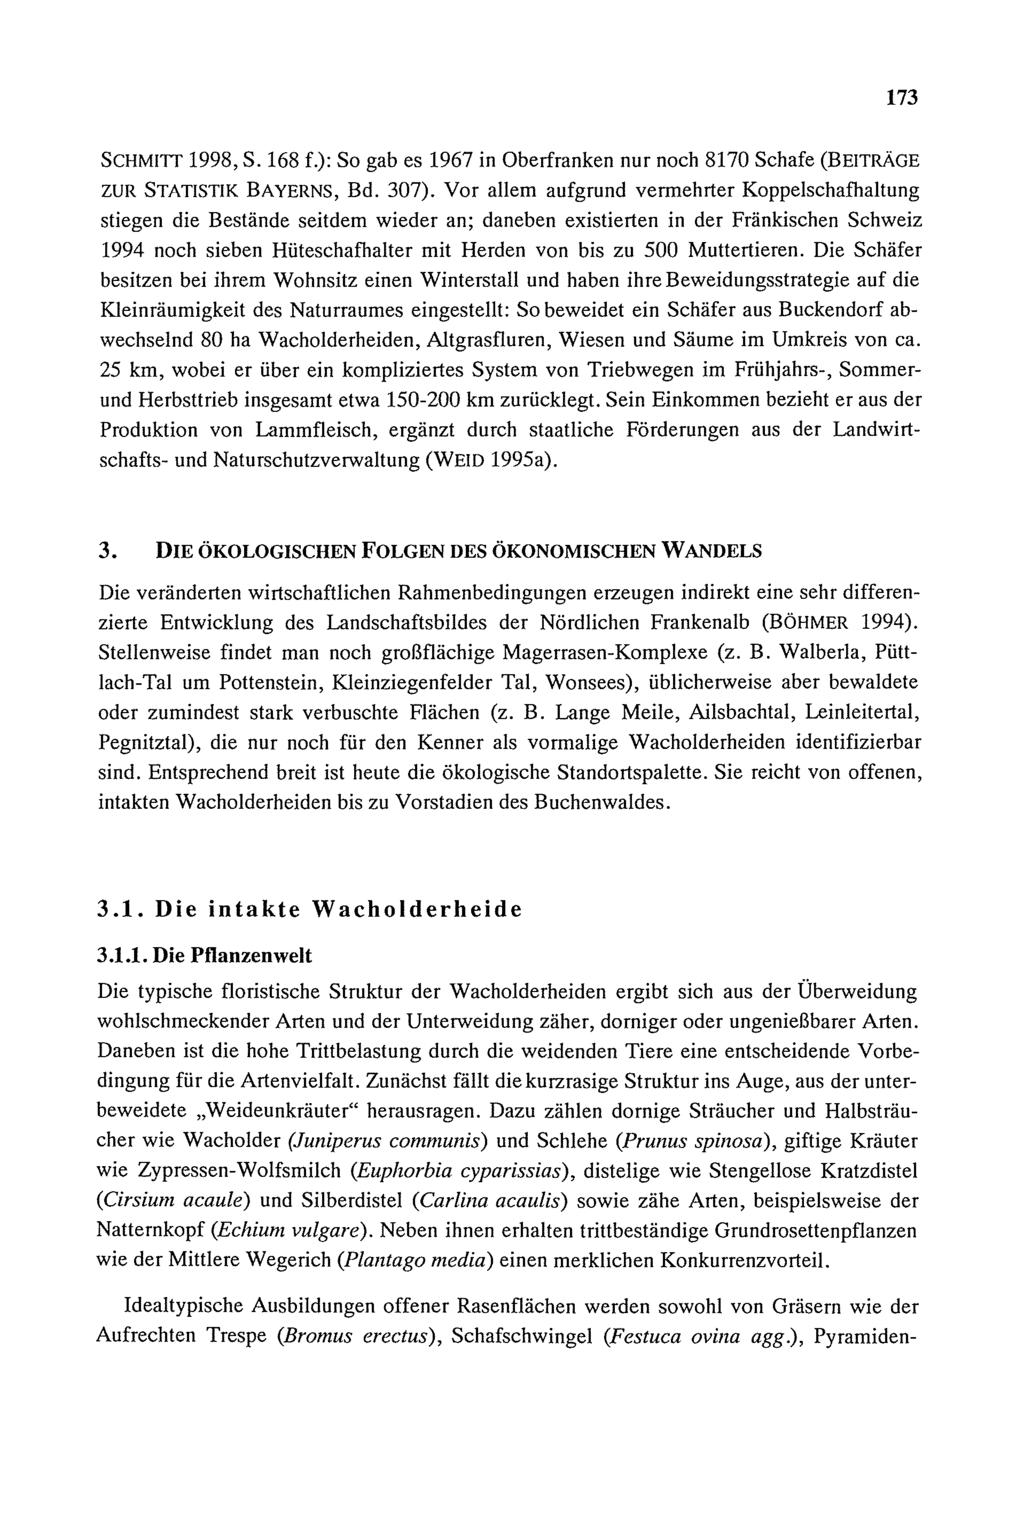 173 SCHMIlT 1998, S. 168 f.): So gab es 1967 in Oberfranken nur noch 8170 Schafe (BEITRÄGE ZUR STATISTIK BAYERNS, Bd. 307).